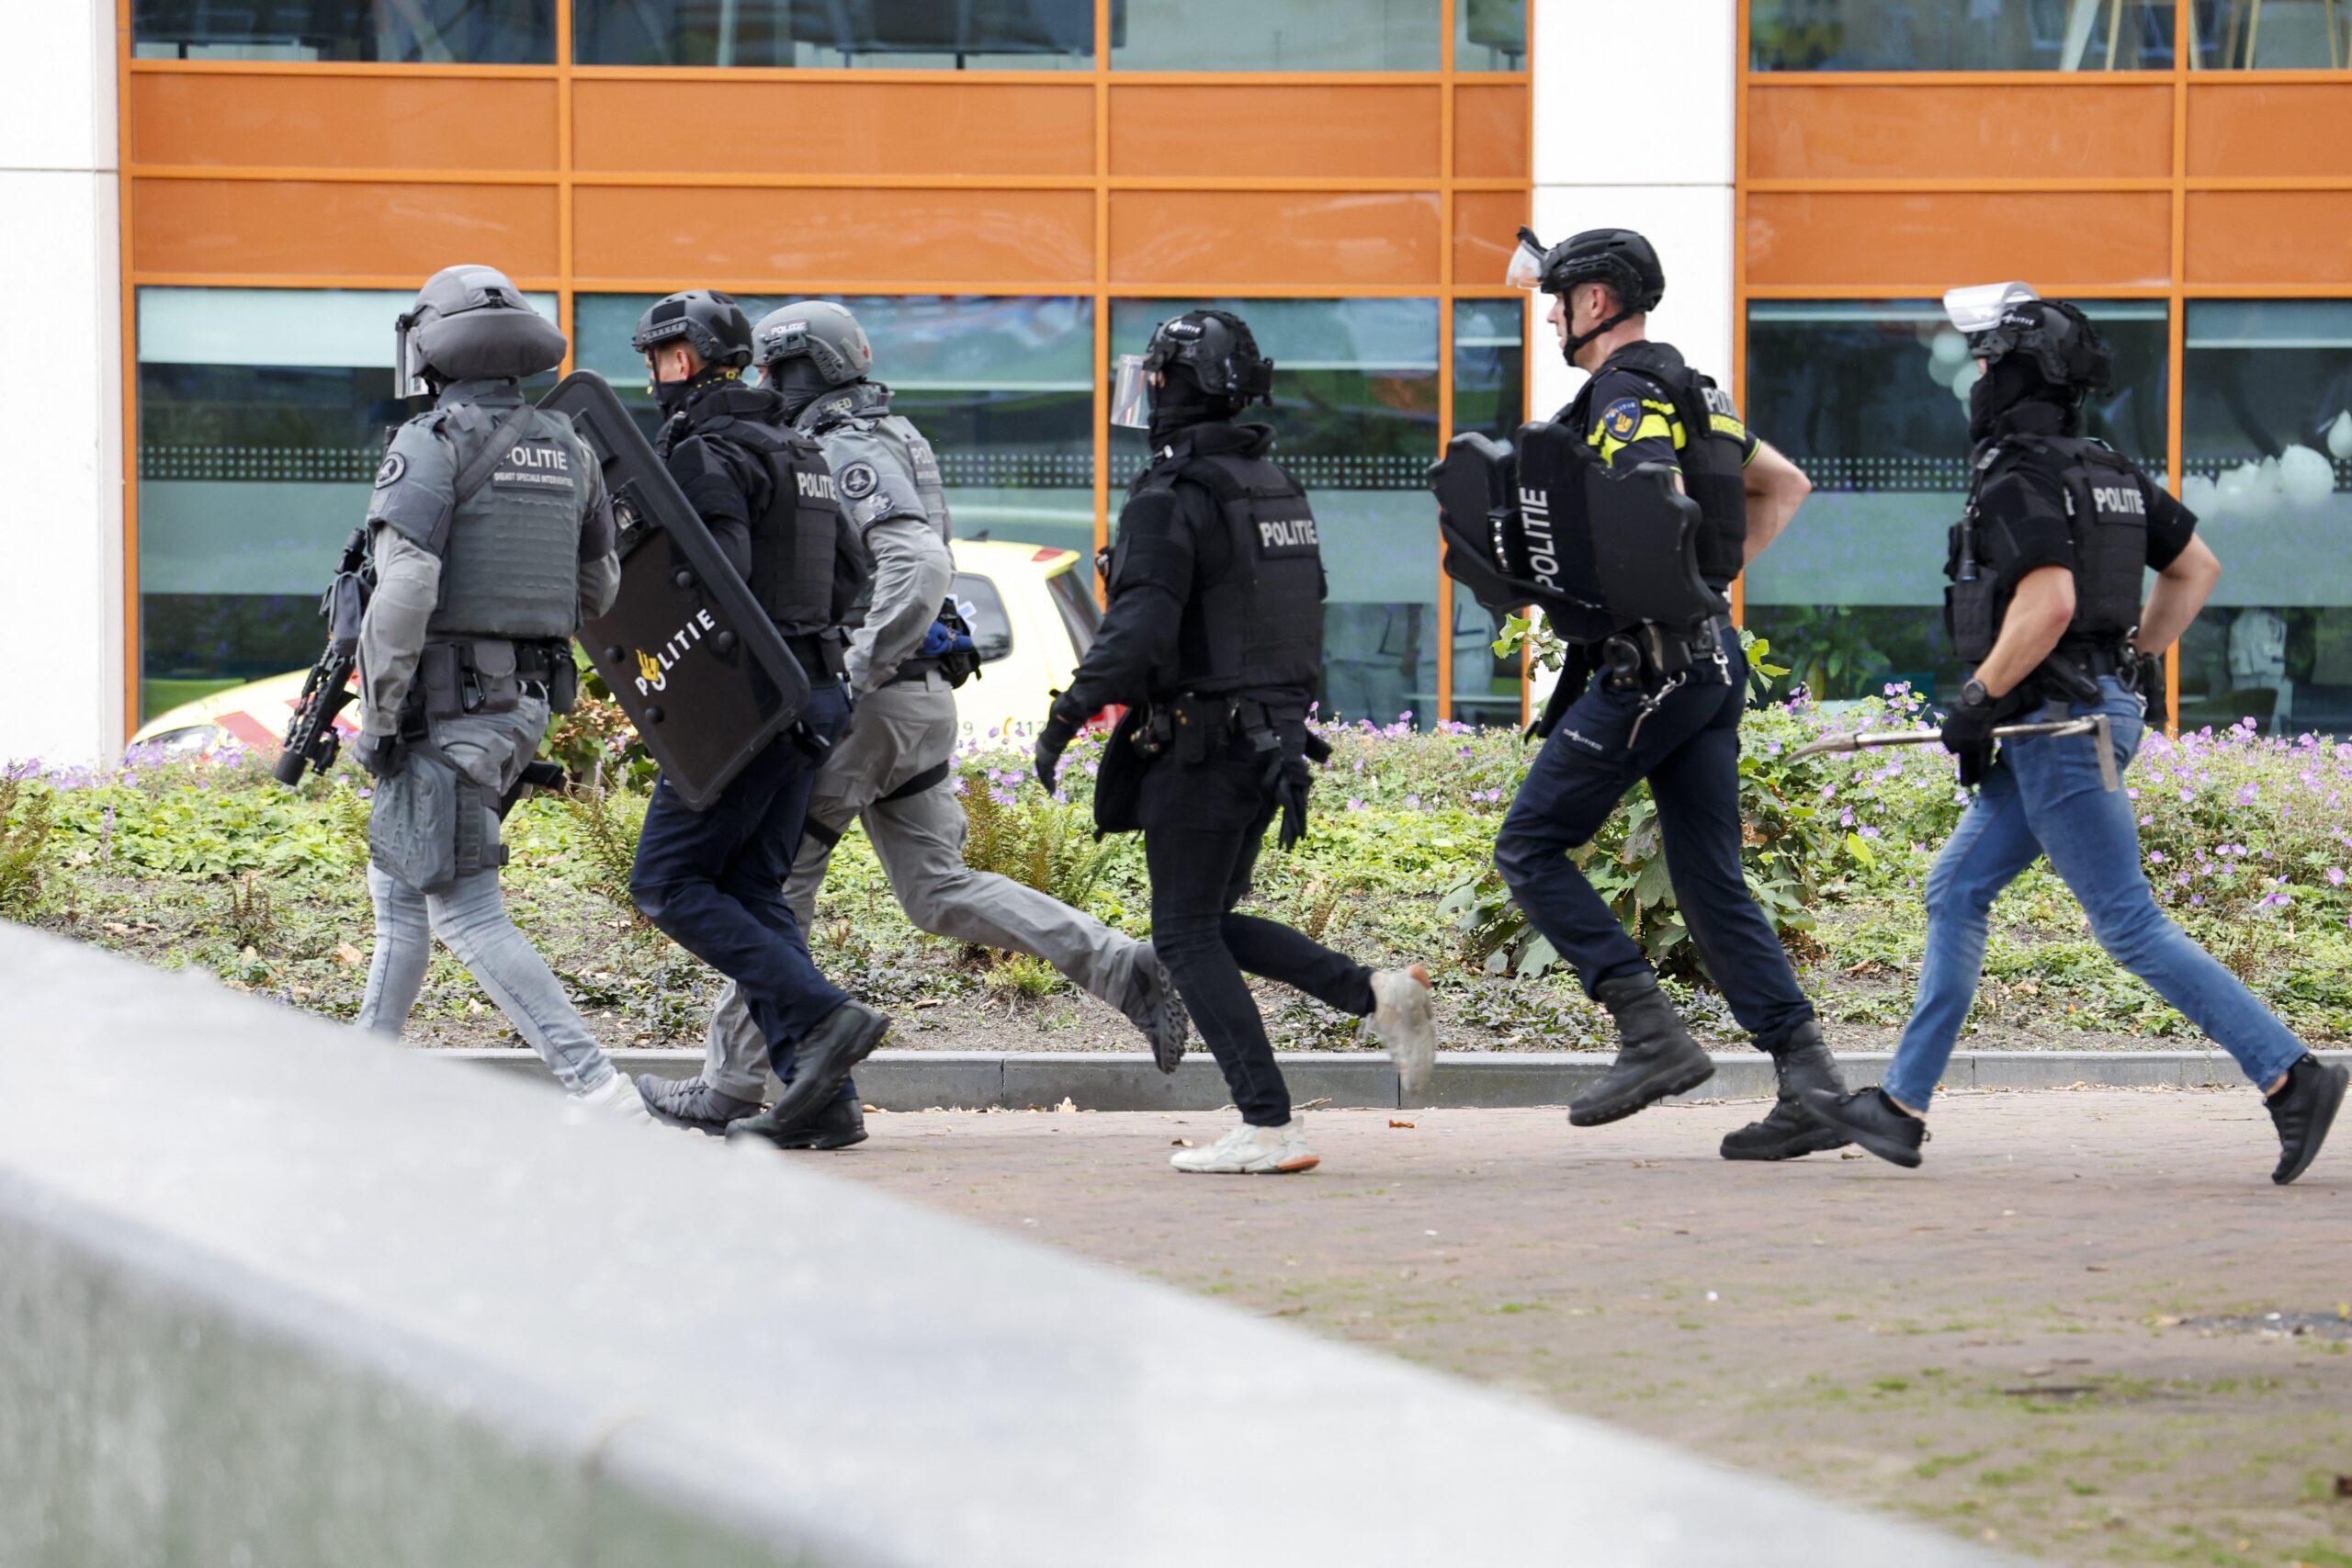 Πανικός στο Ρότερνταμ: Δύο τραυματίες από πυροβολισμούς σε Πανεπιστήμιο